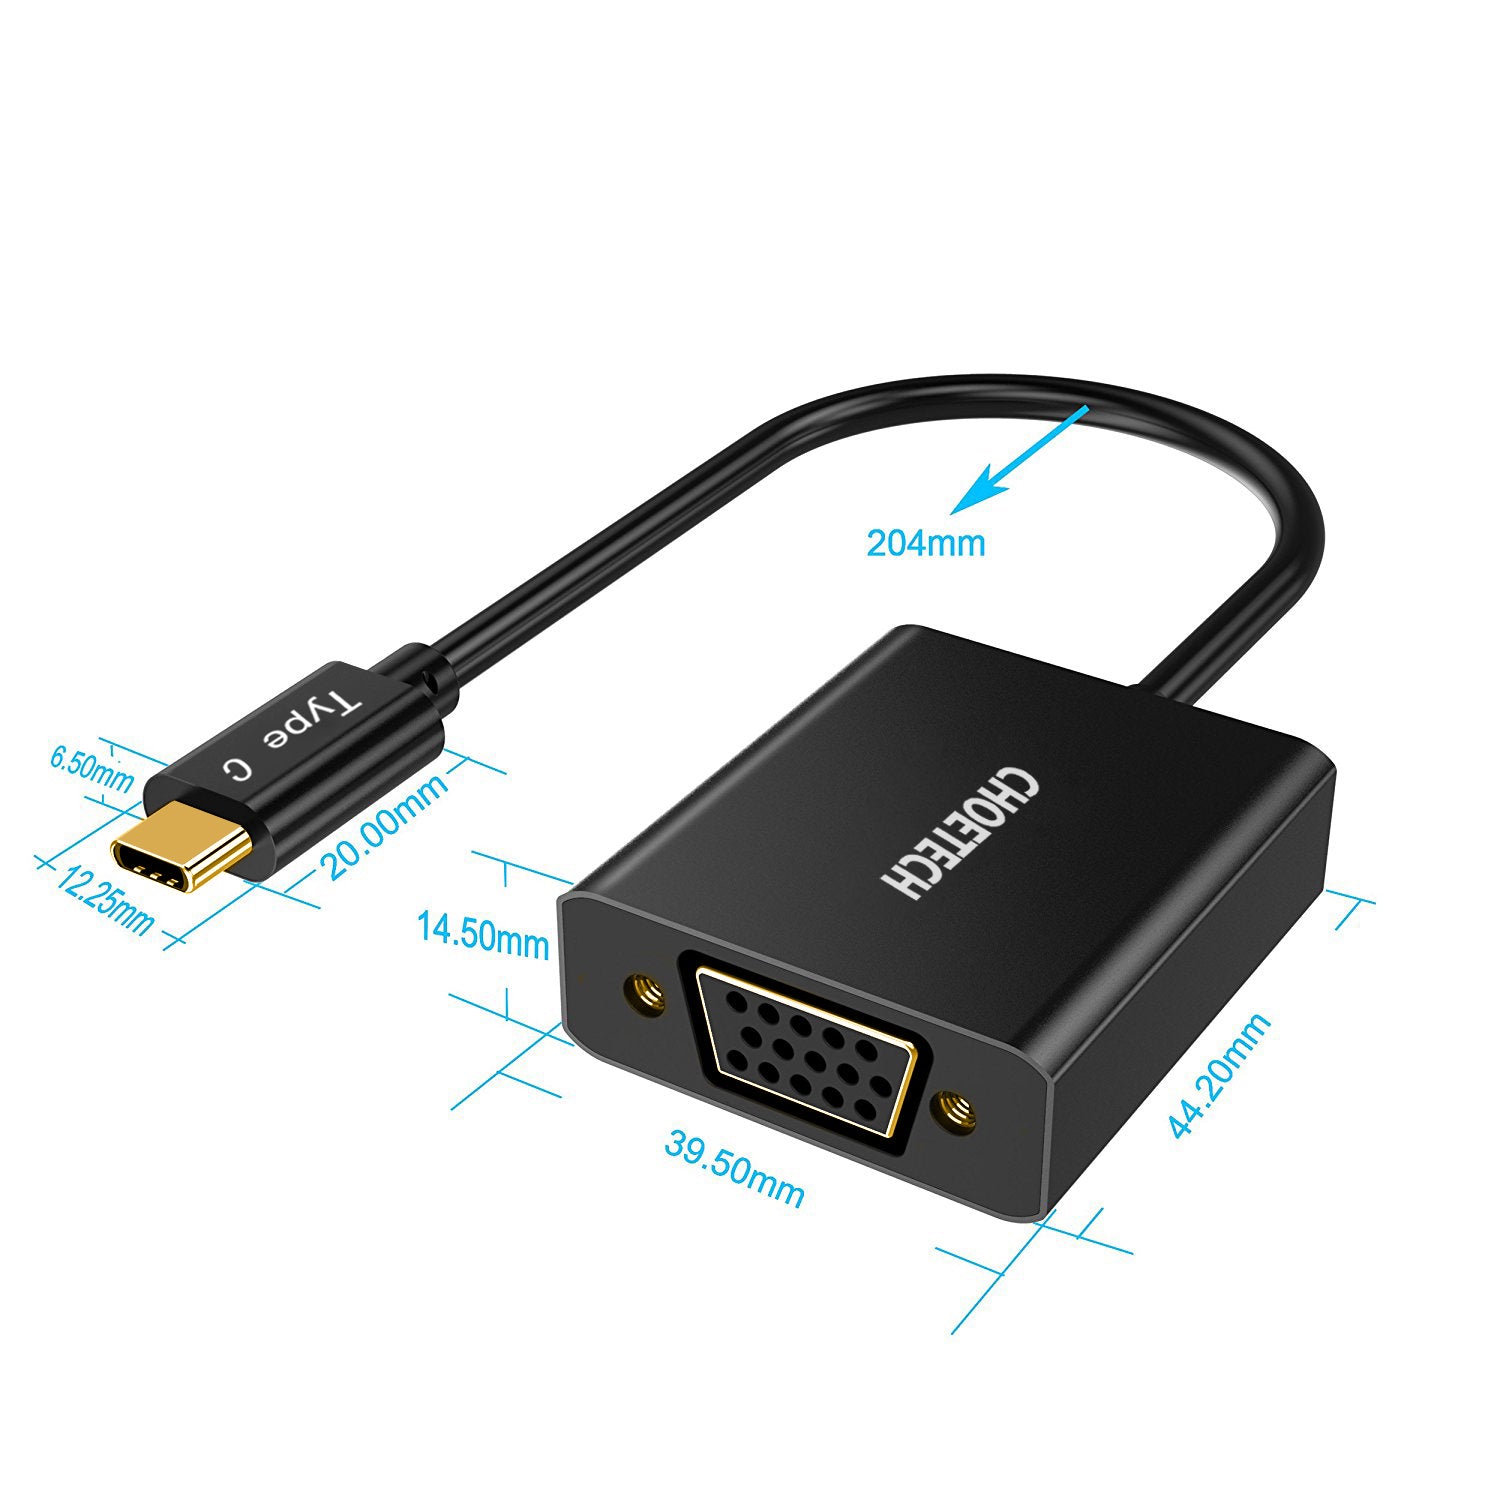 HUB-V01 Choetech Adaptateur USB 3.1 USB Type-C vers VGA pris en charge 1080p (compatible Thunderbolt 3 ports) pour MacBook, Chromebook Pixel et autres appareils Type-C